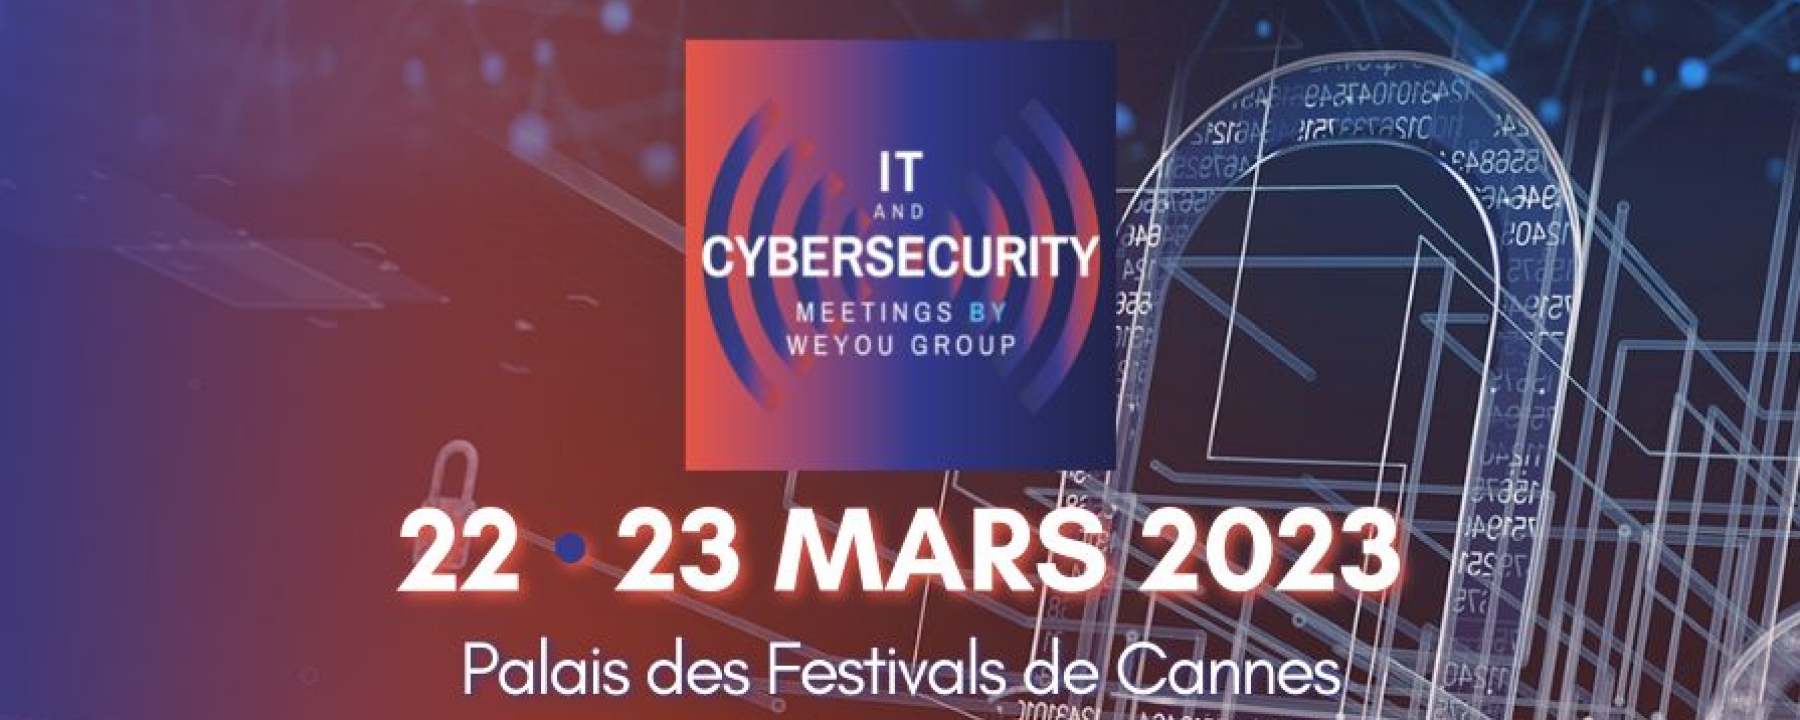 IT & Cybersecurity Meetings 